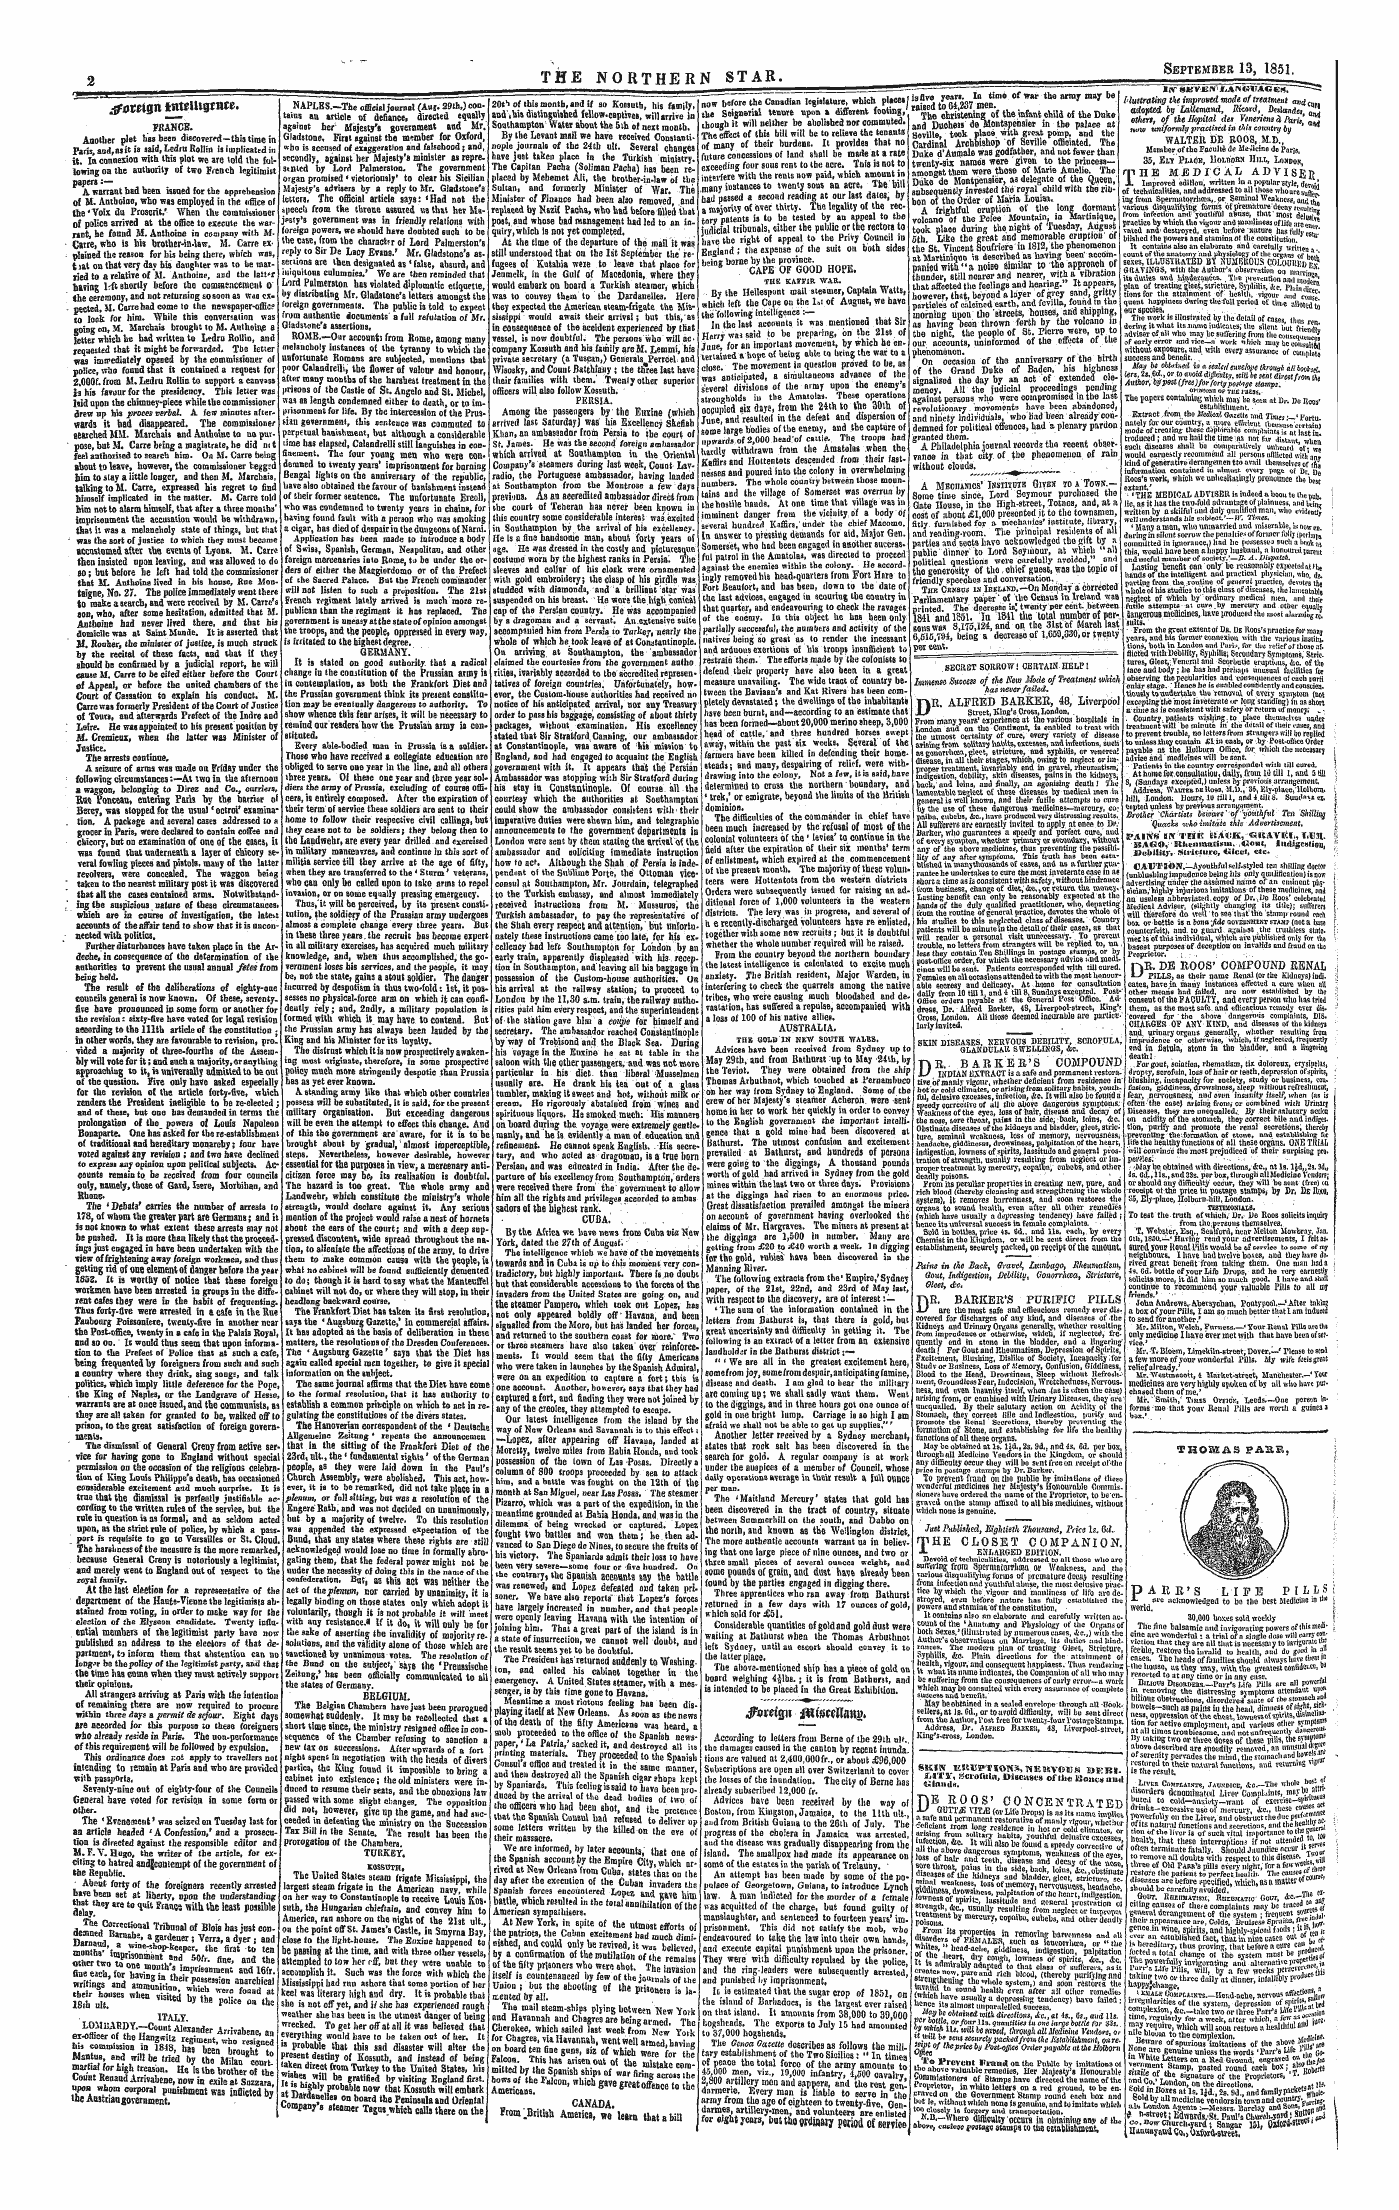 Northern Star (1837-1852): jS F Y, 1st edition - Dfcttijpi Jtttftttttaiig*